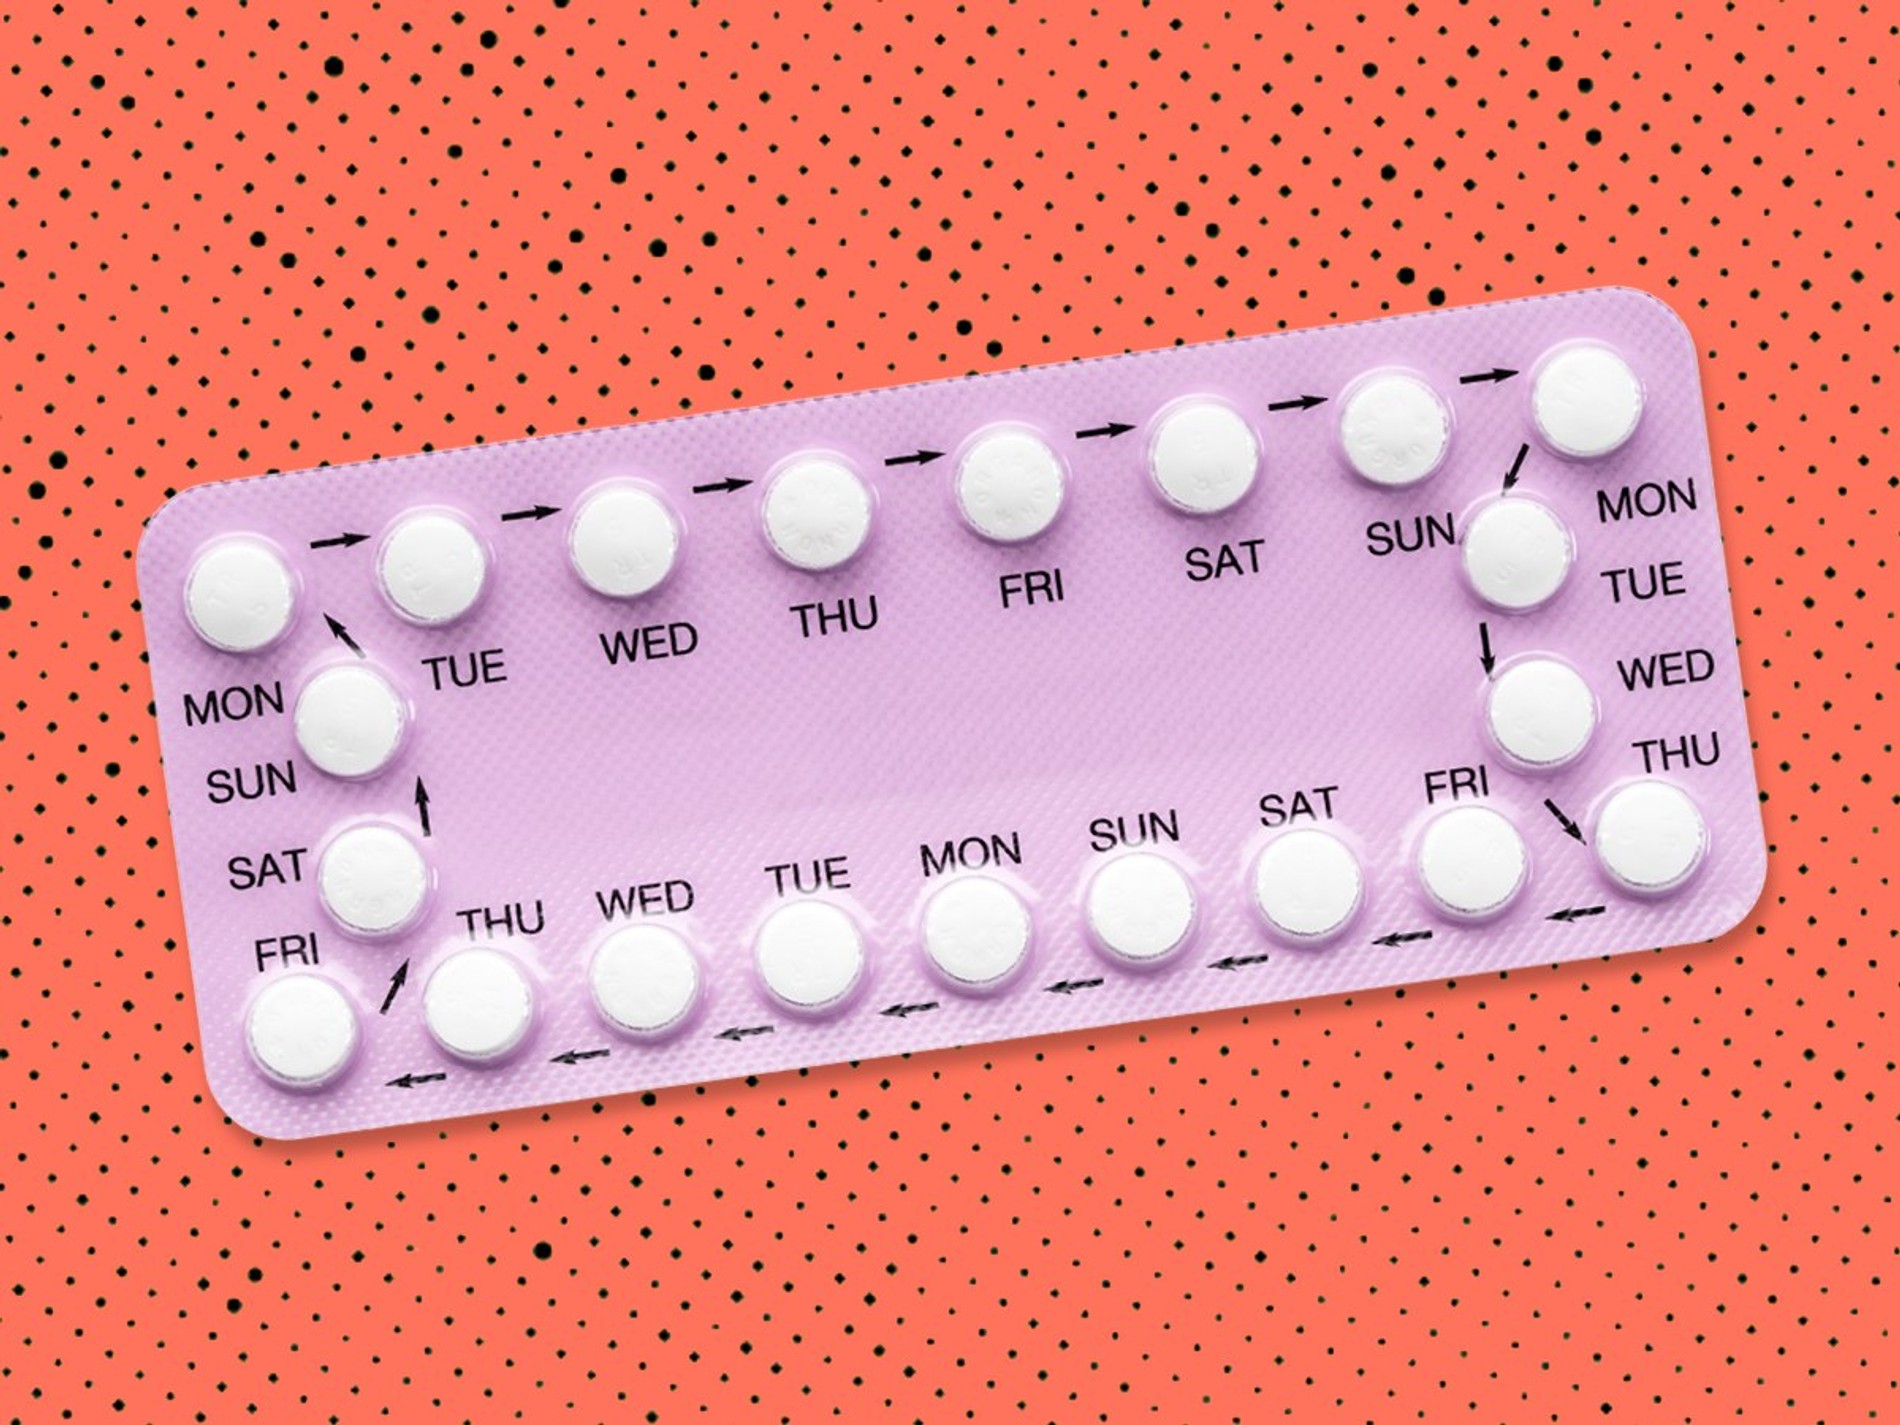 Сильные противозачаточные таблетки. Противозачаточные. Противозачатныетаблетки. Гормональные противозачаточные таблетки. Гормональные таблетки контрацептивы.